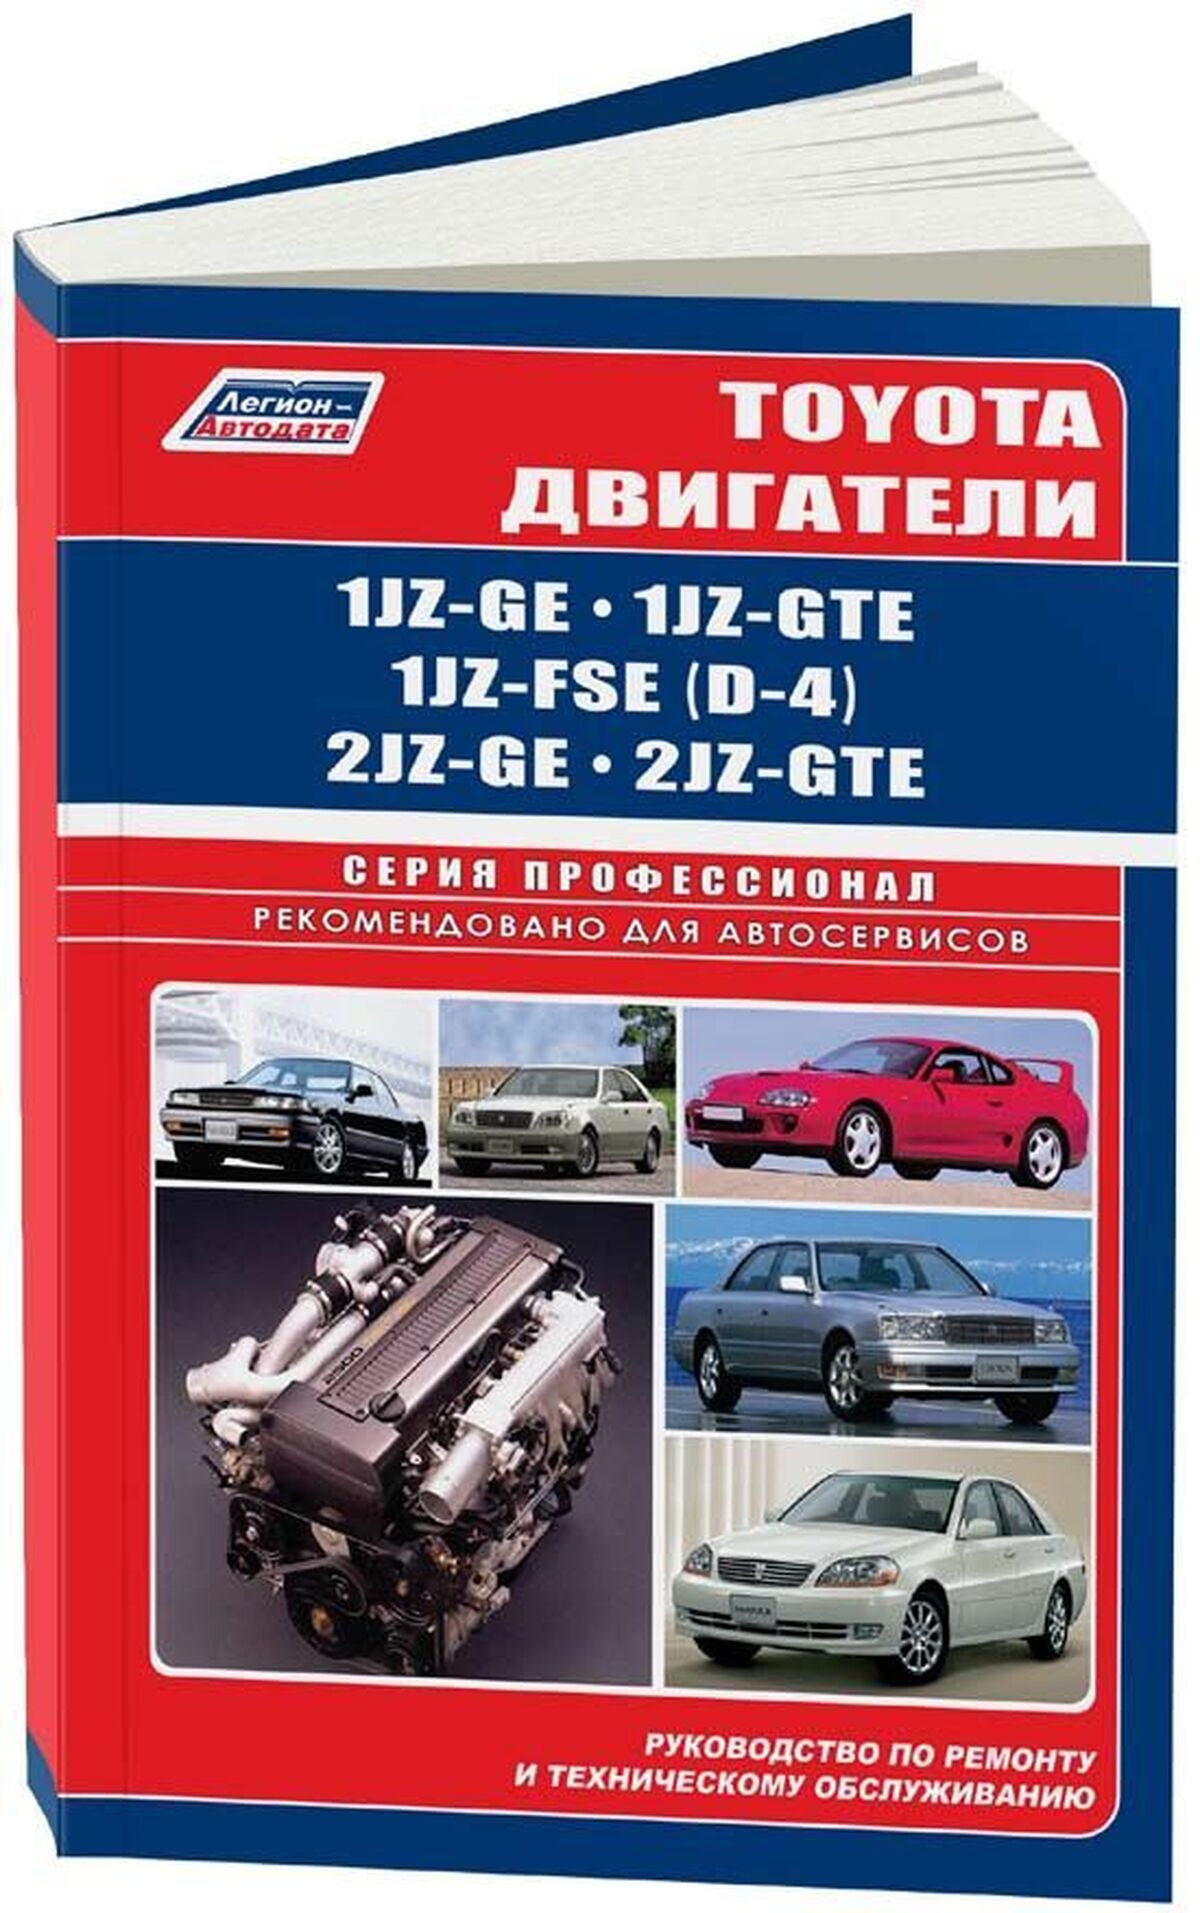 Книга: Двигатели TOYOTA 1JZ-GE / 1JZ-GTE / 1JZ-FSE (D-4) / 2JZ-GE / 2JZ-GTE рем., то | Легион-Aвтодата